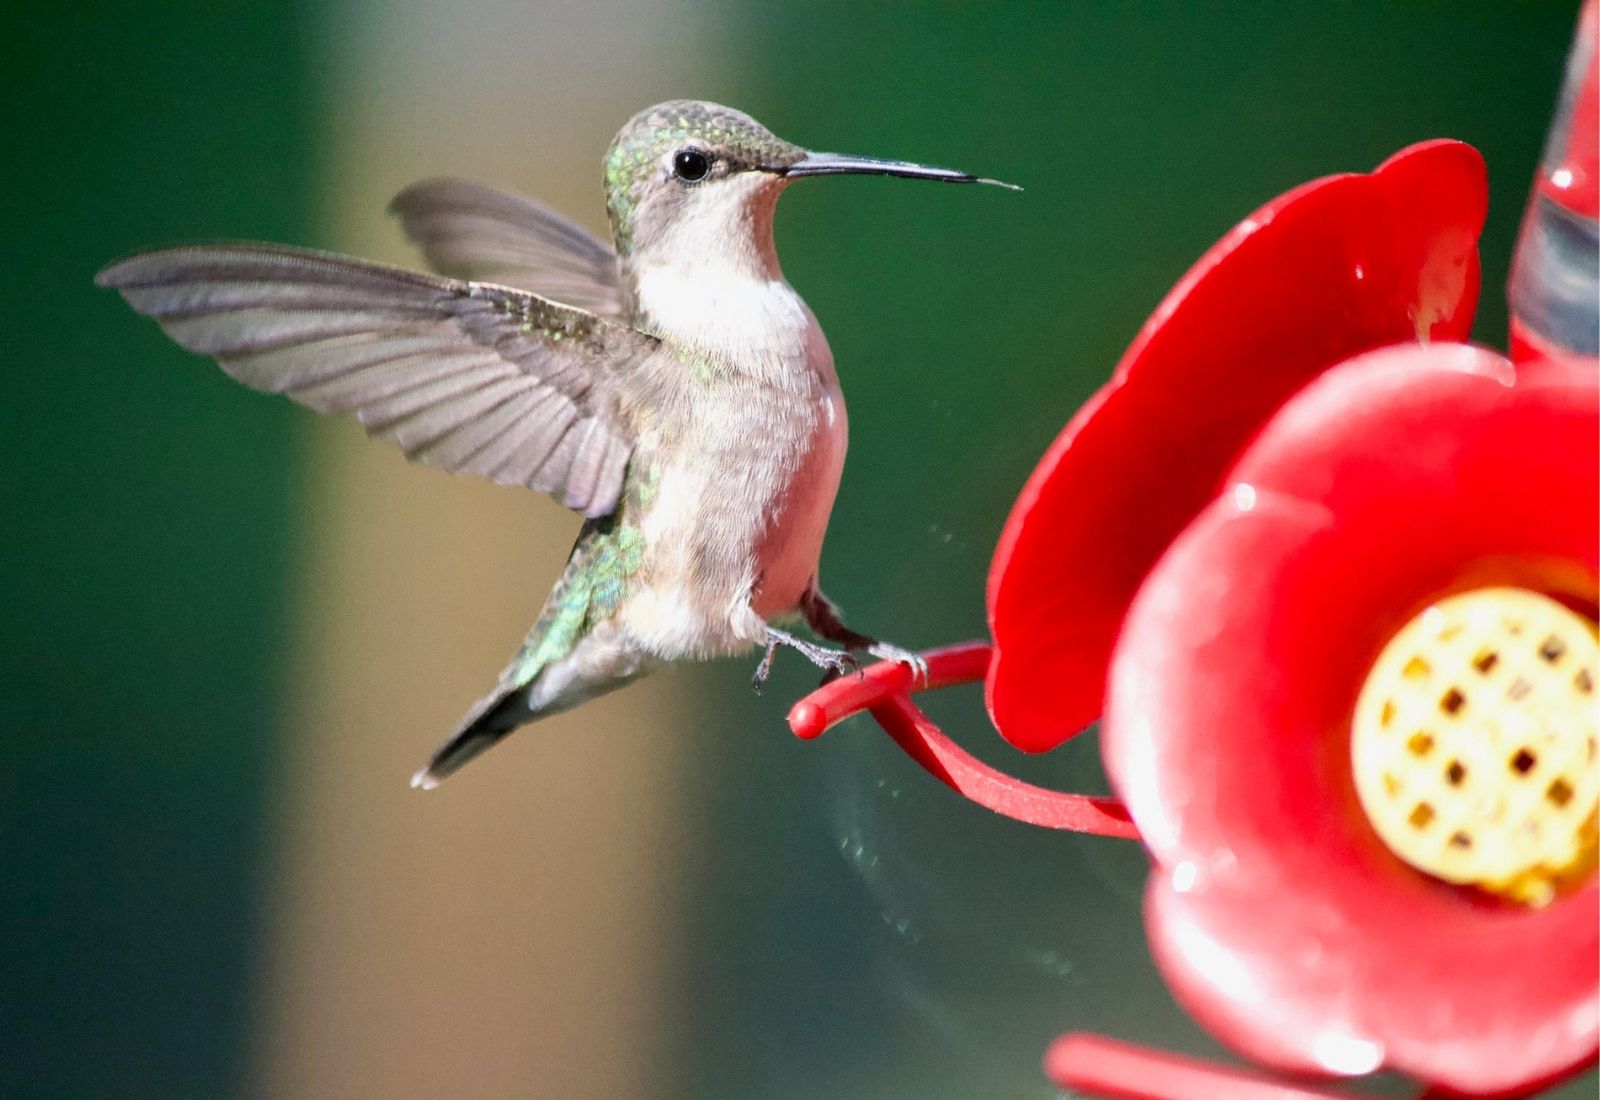 hummingbird hovering at feeder